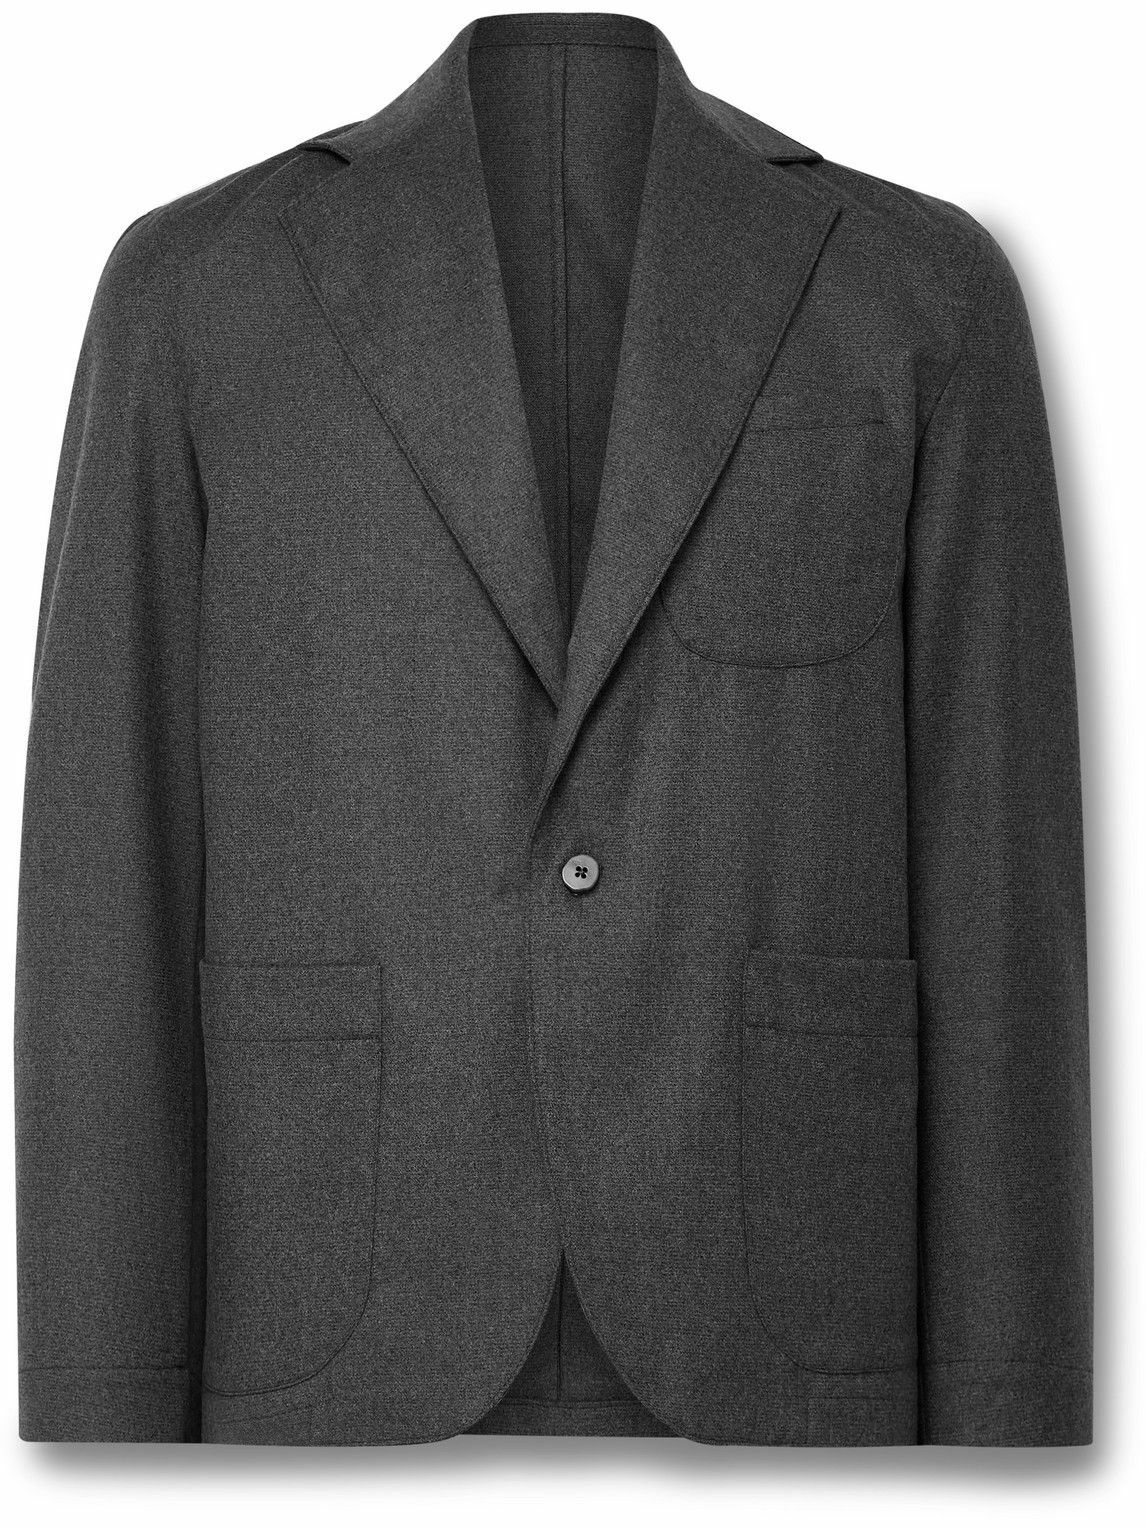 Stòffa - Wool-Flannel Suit Jacket - Gray STÒFFA